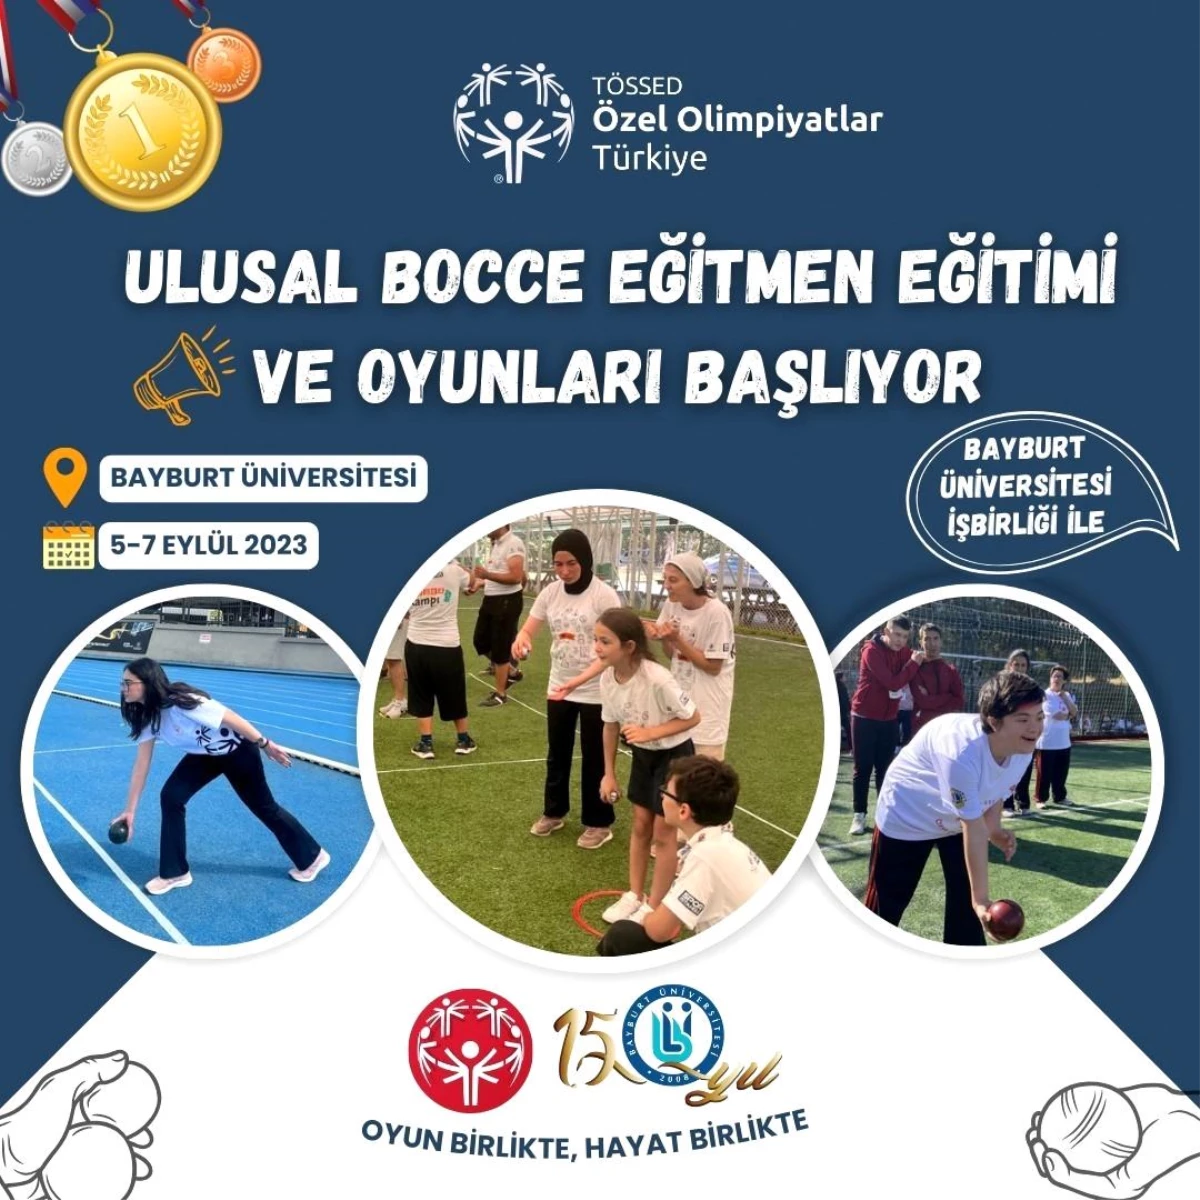 Özel Olimpiyatlar Türkiye, Ulusal Bocce Eğitmen Eğitimi ve Oyunları\'nı Bayburt\'ta düzenliyor